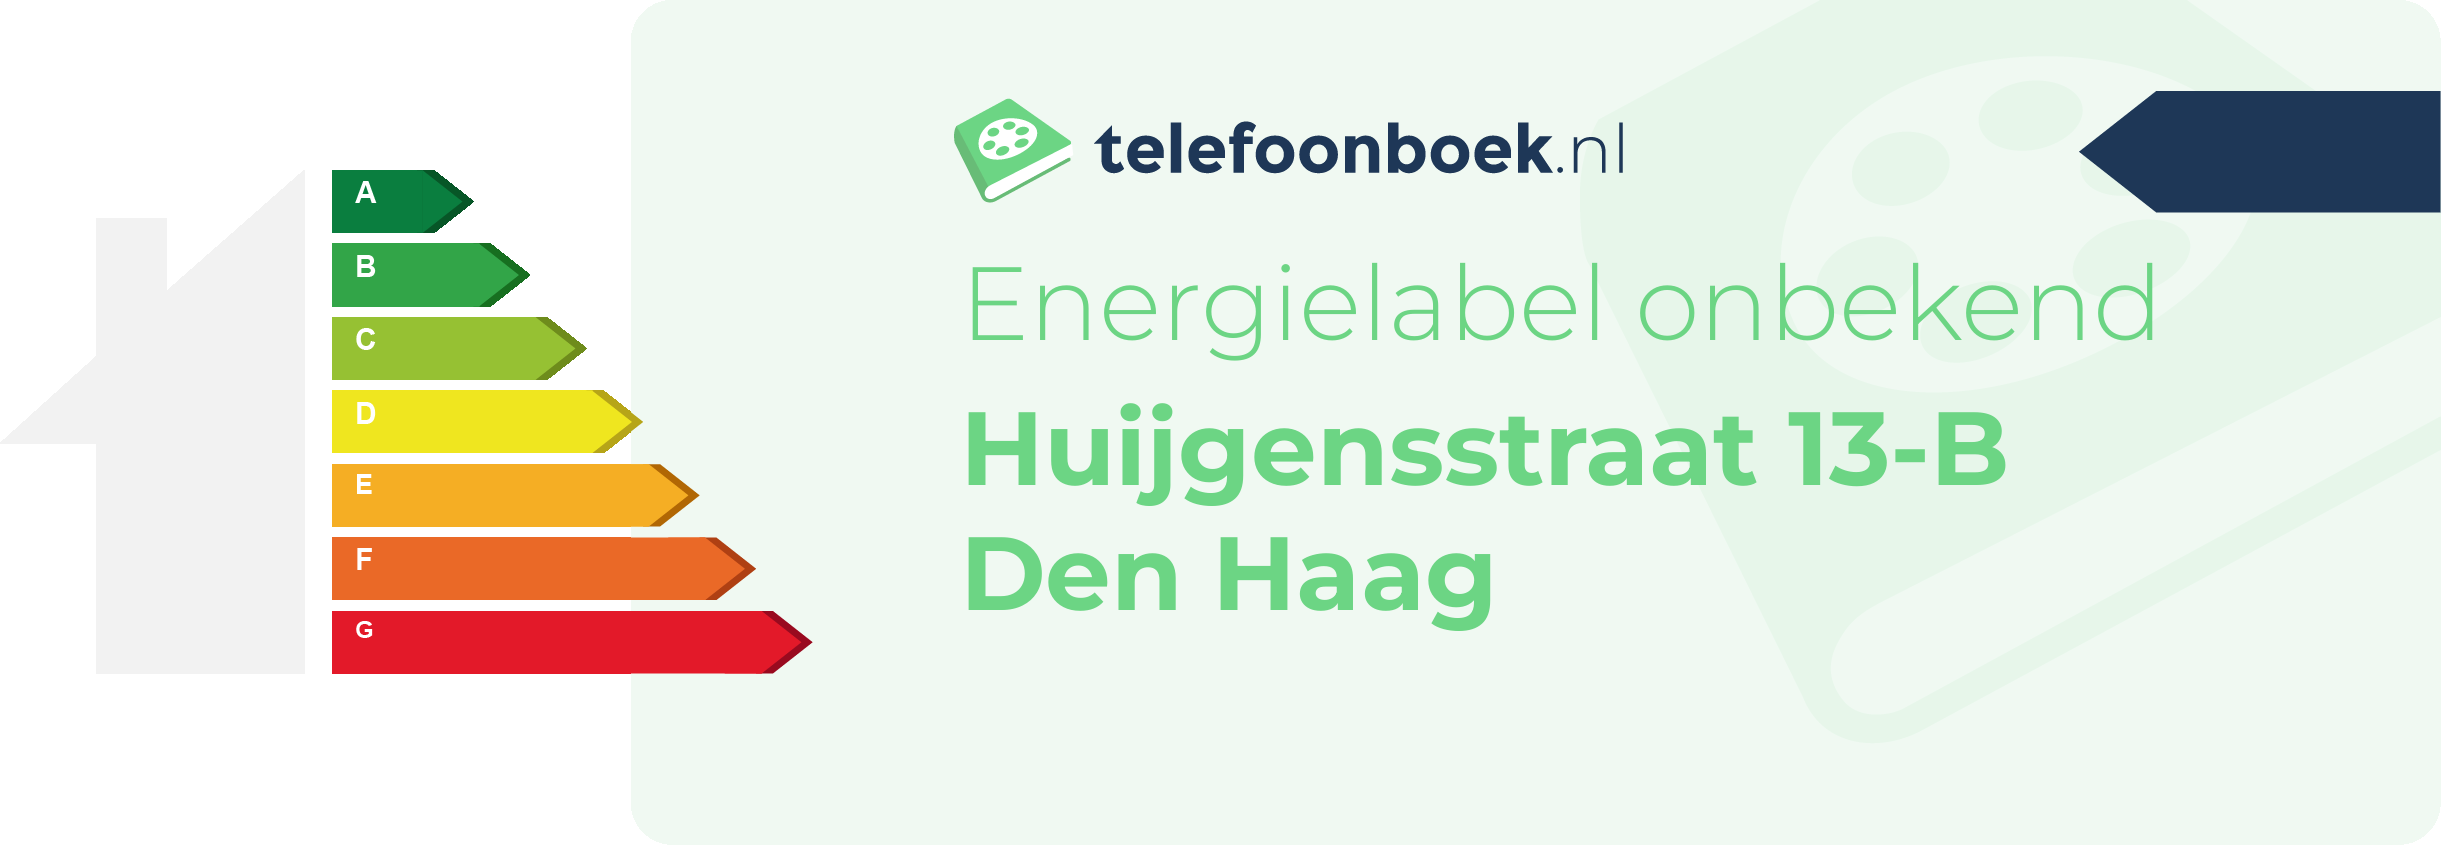 Energielabel Huijgensstraat 13-B Den Haag